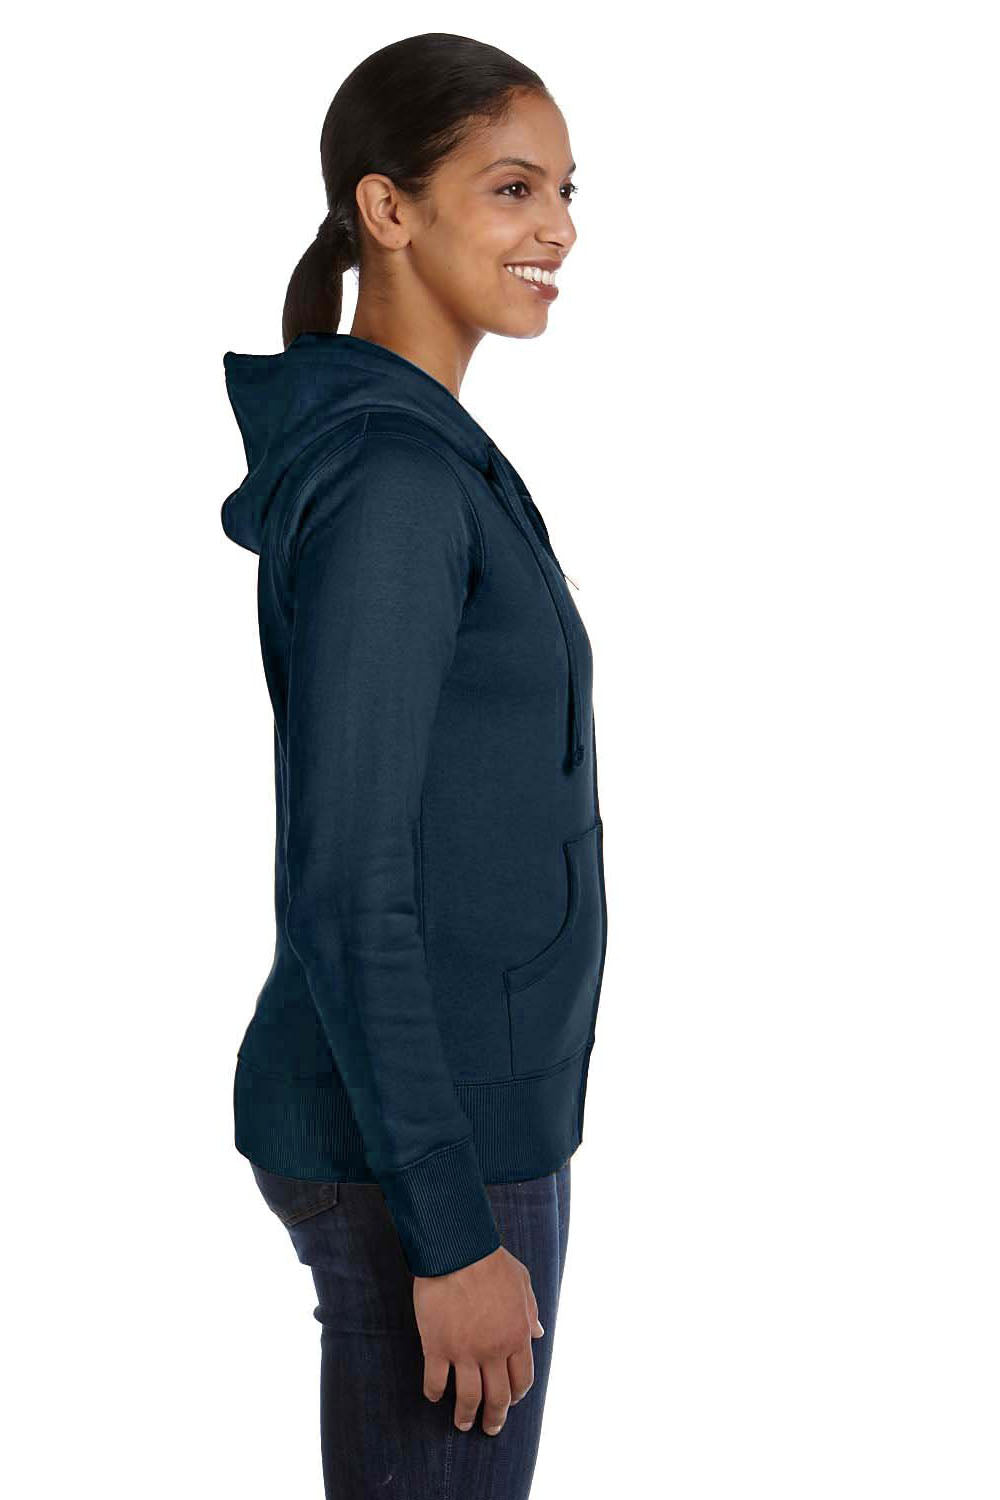 Econscious EC4501 Womens Full Zip Hooded Sweatshirt Hoodie Pacific Blue SIde